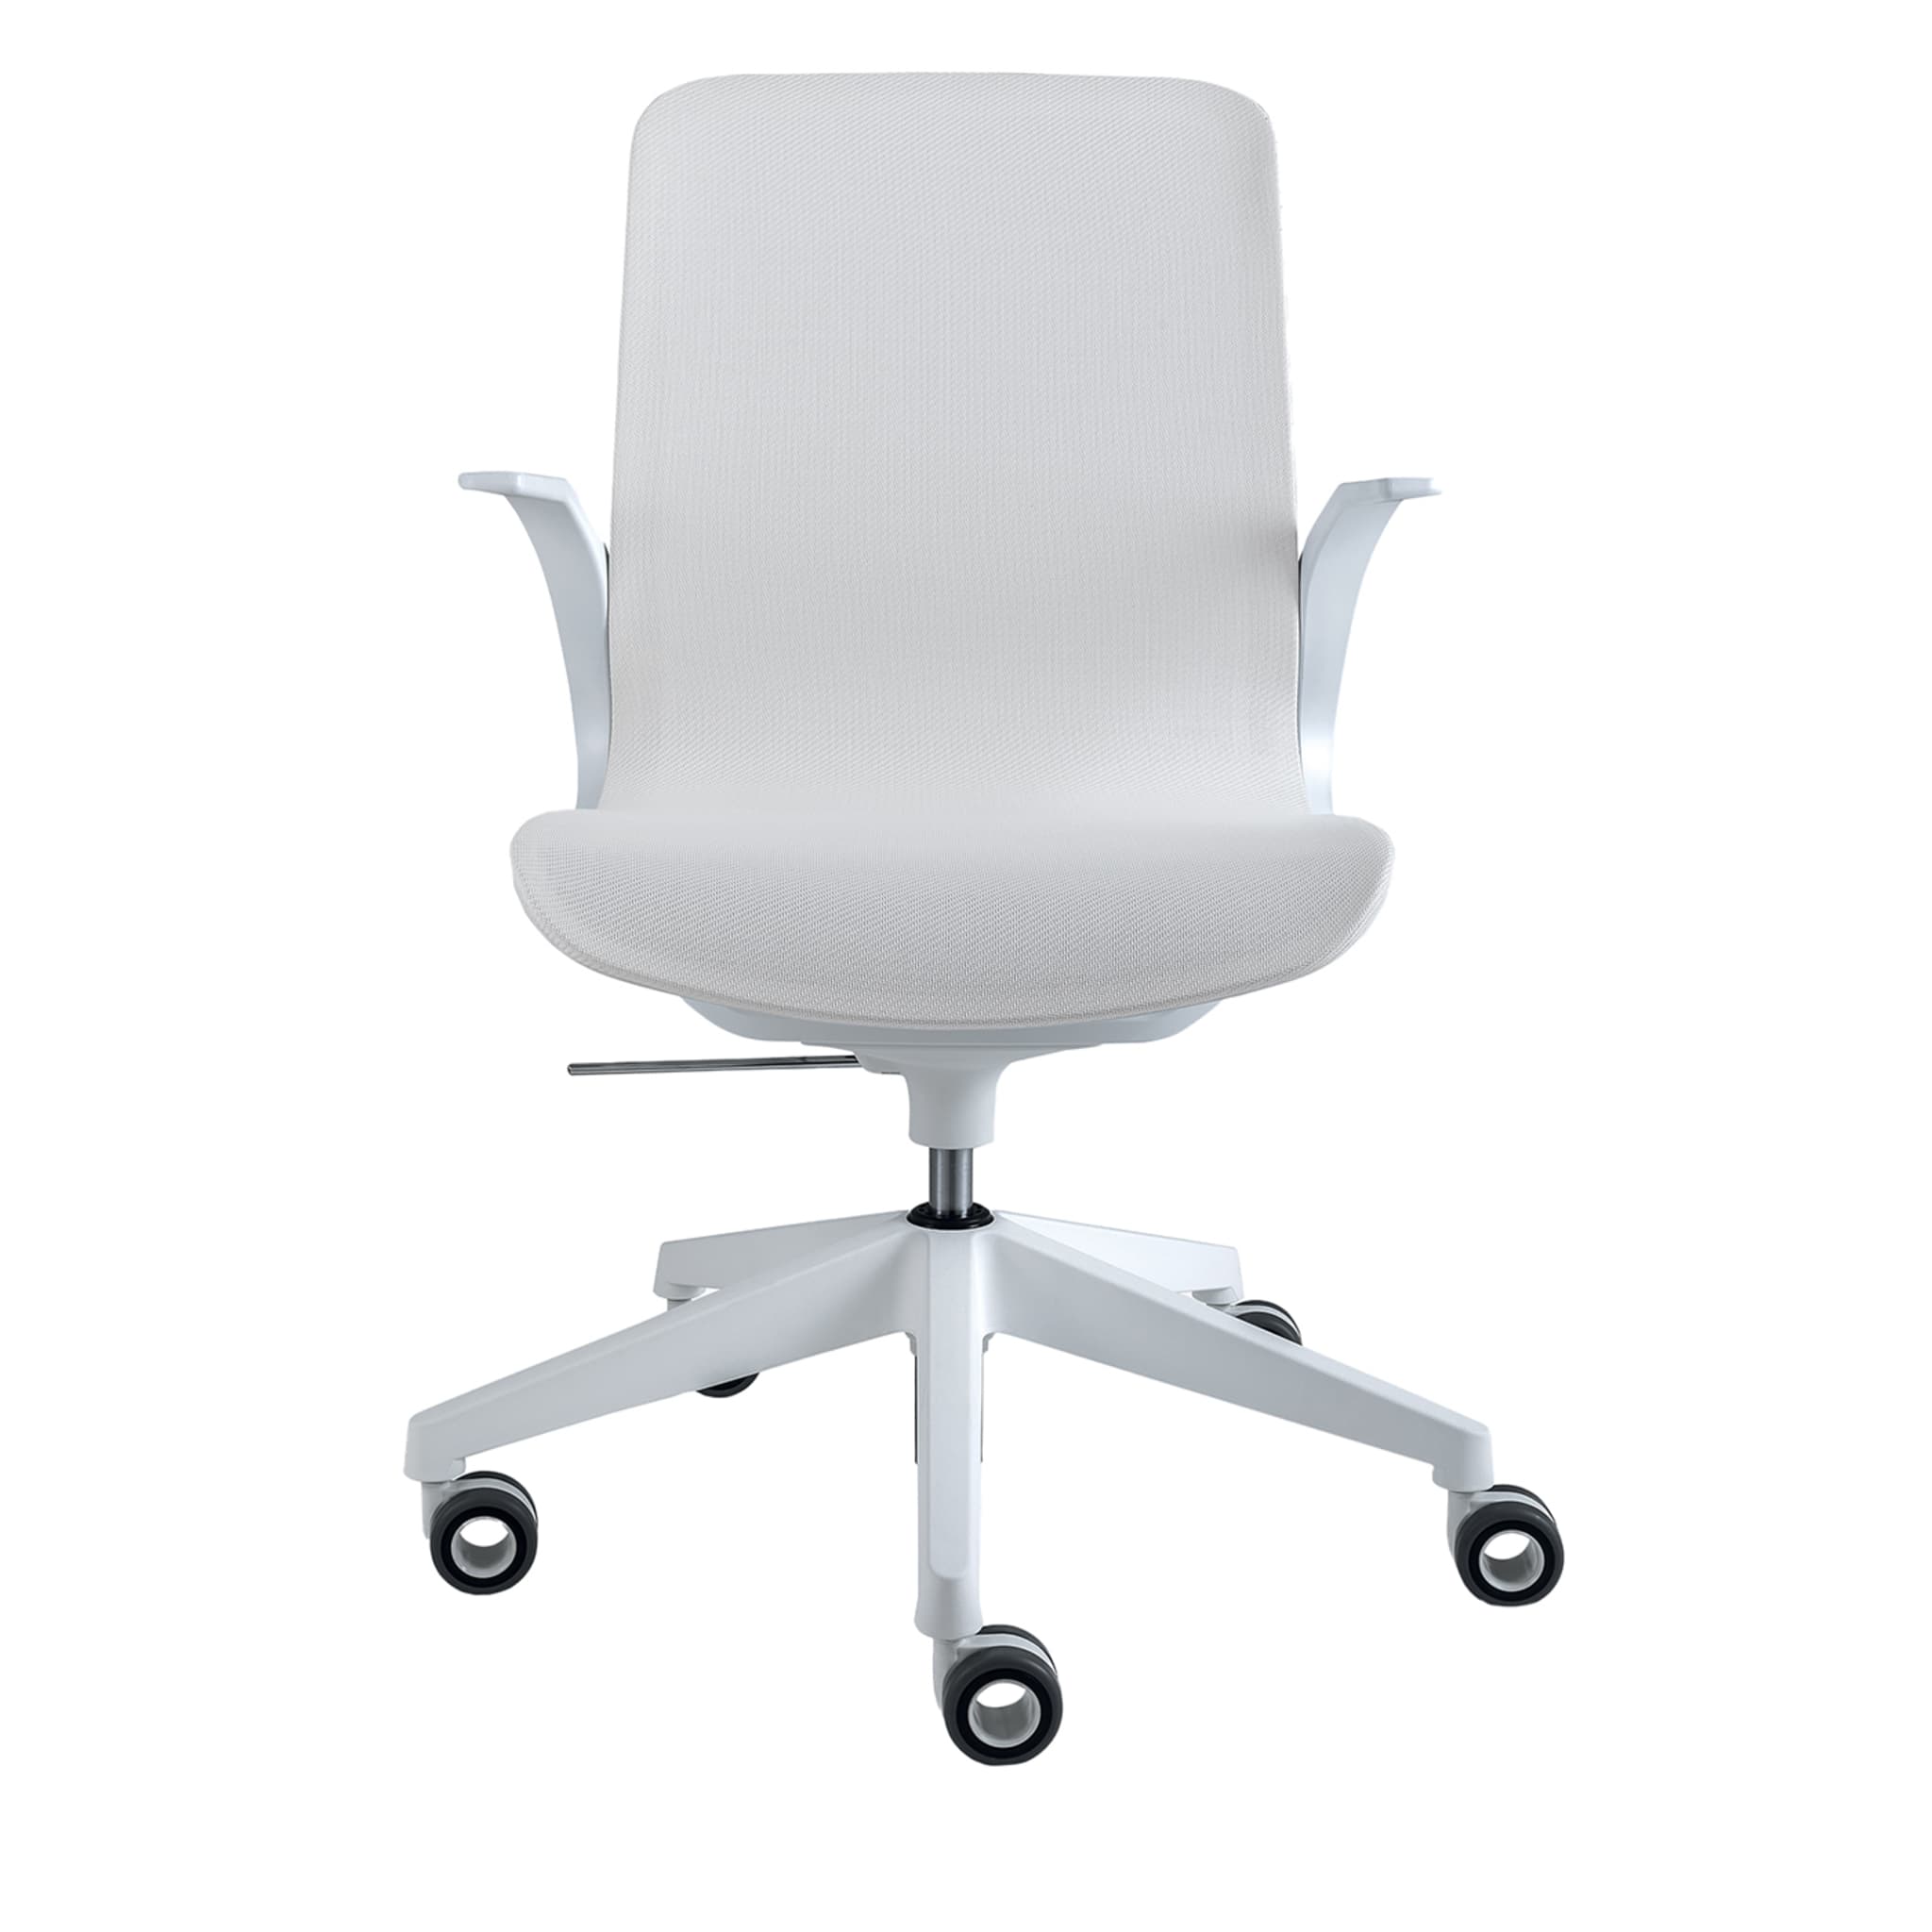 EX5 fauteuil pivotant blanc - Vue principale